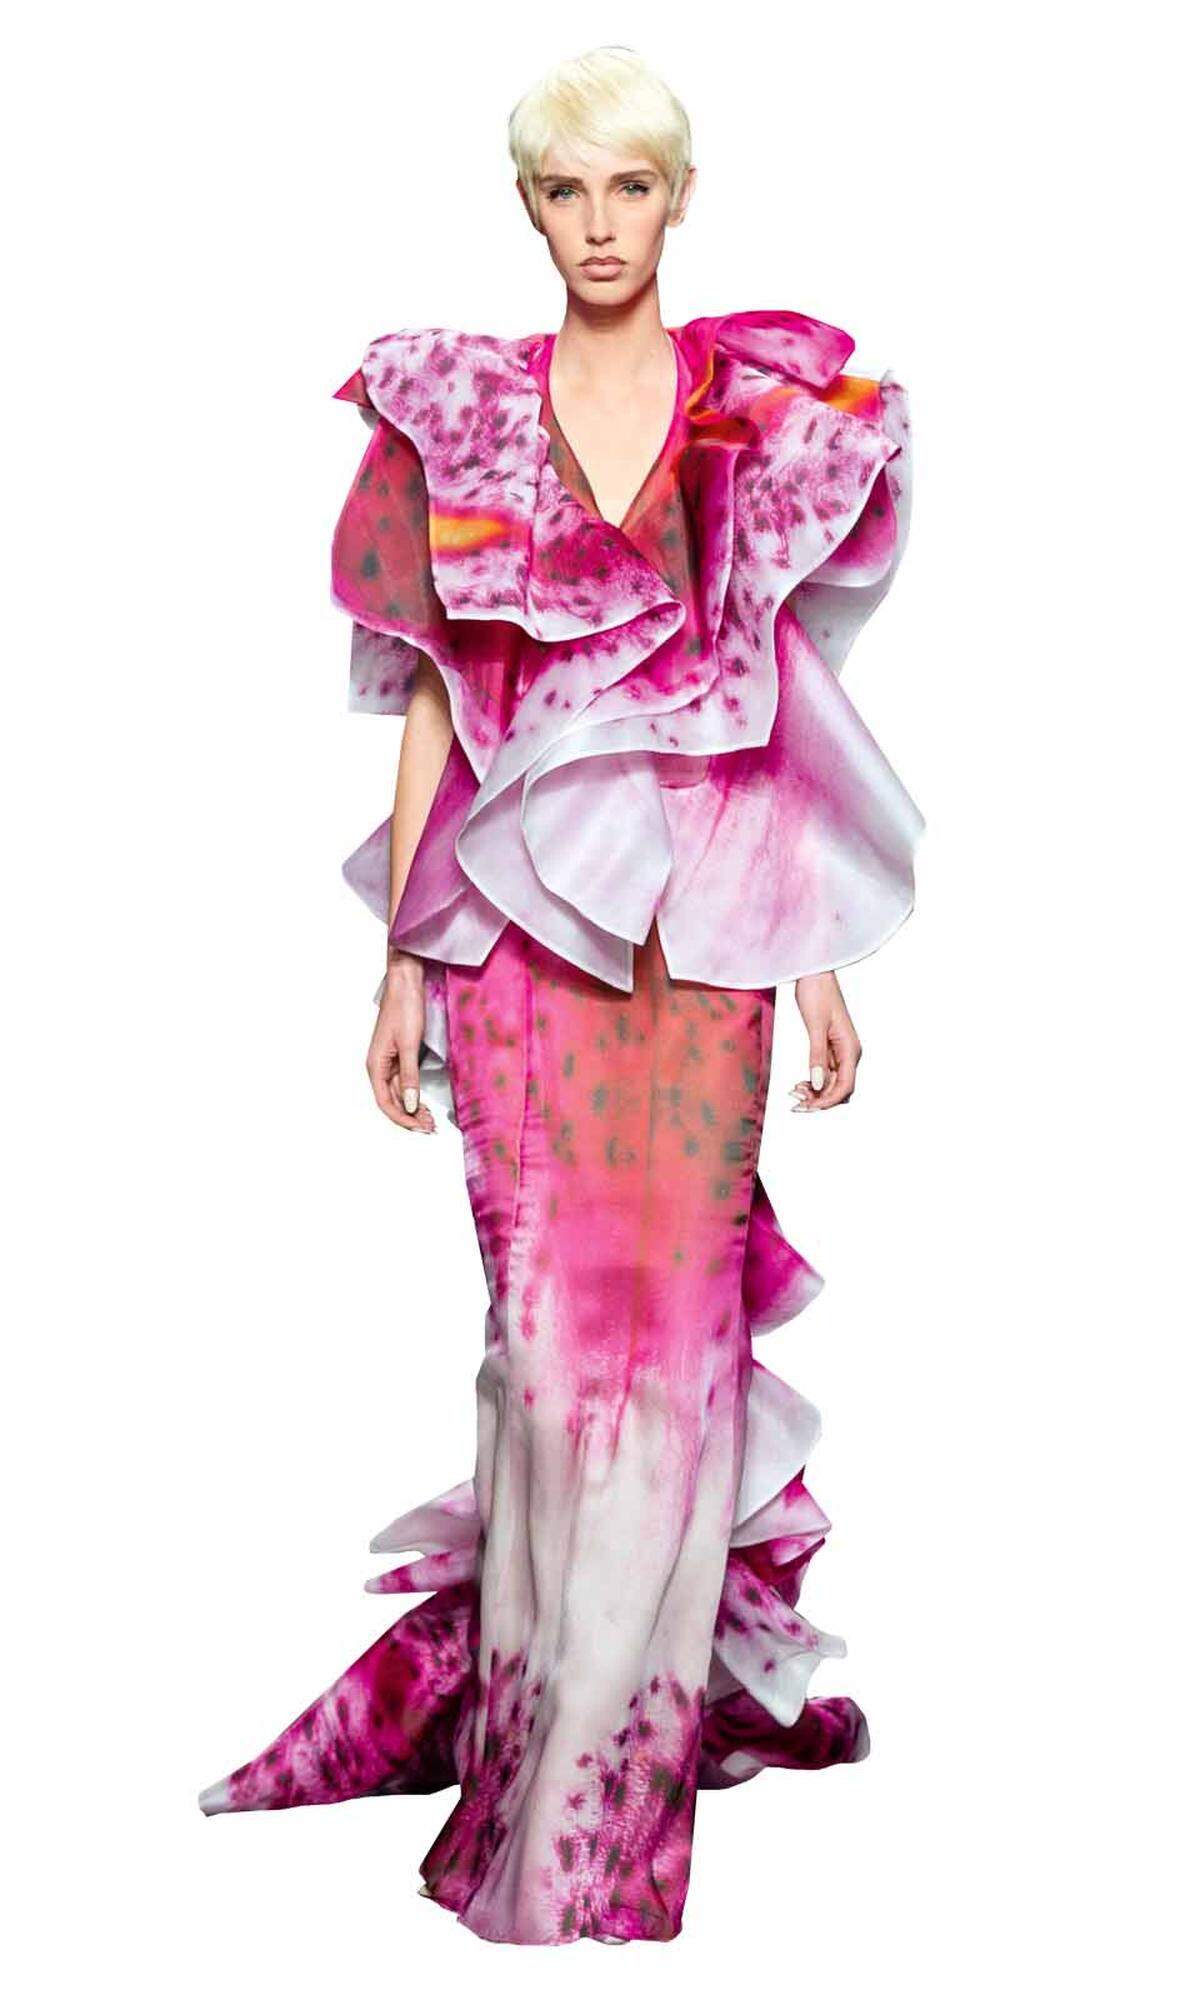 Einmal als Blüte durchs Leben schreiten? Mit dem Kleid von Moschino gelingt es, www.moschino.com.